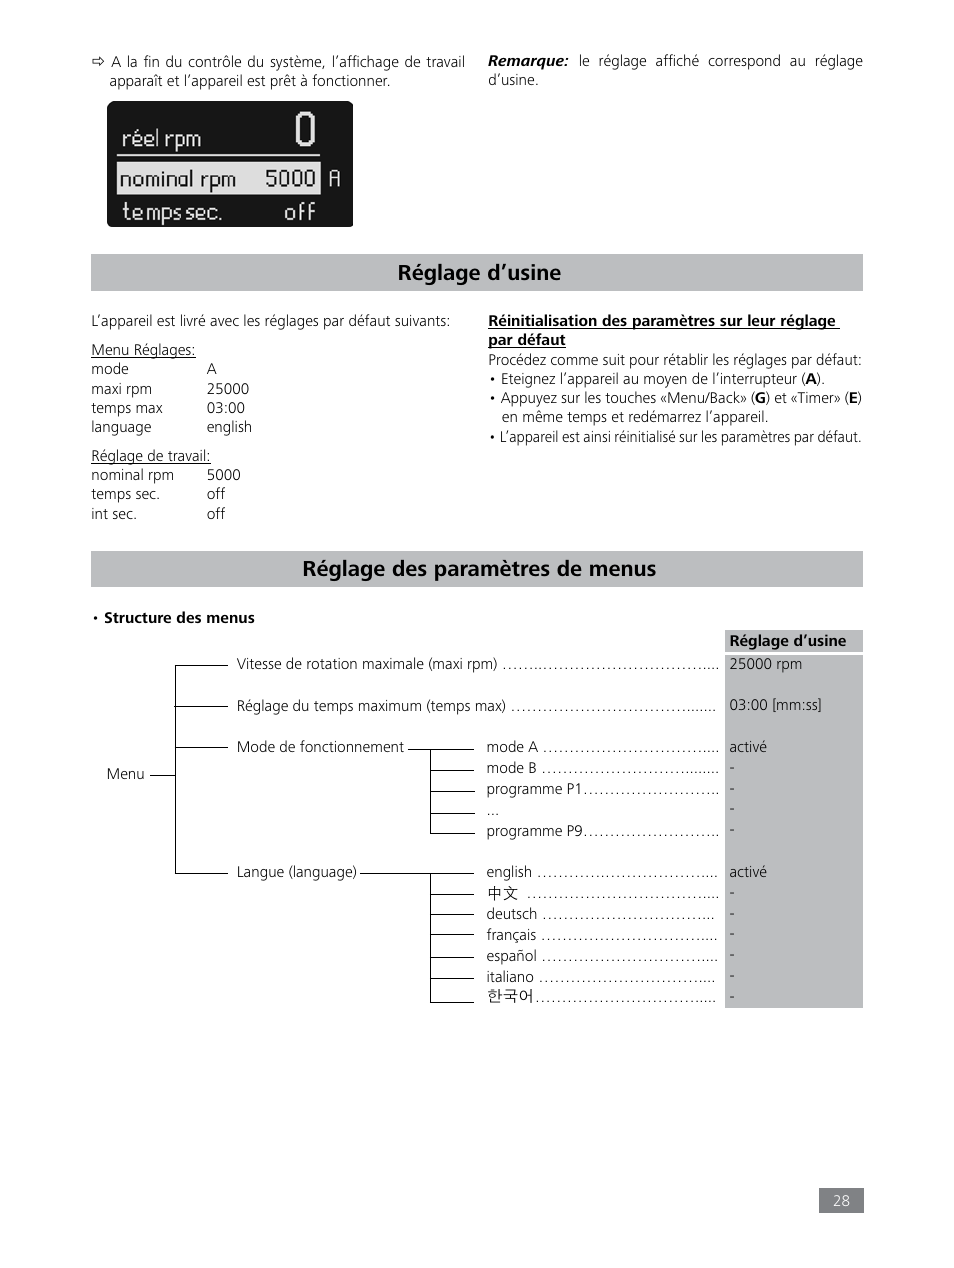 Réglage d’usine, Réglage des paramètres de menus | IKA Tube Mill control User Manual | Page 28 / 64